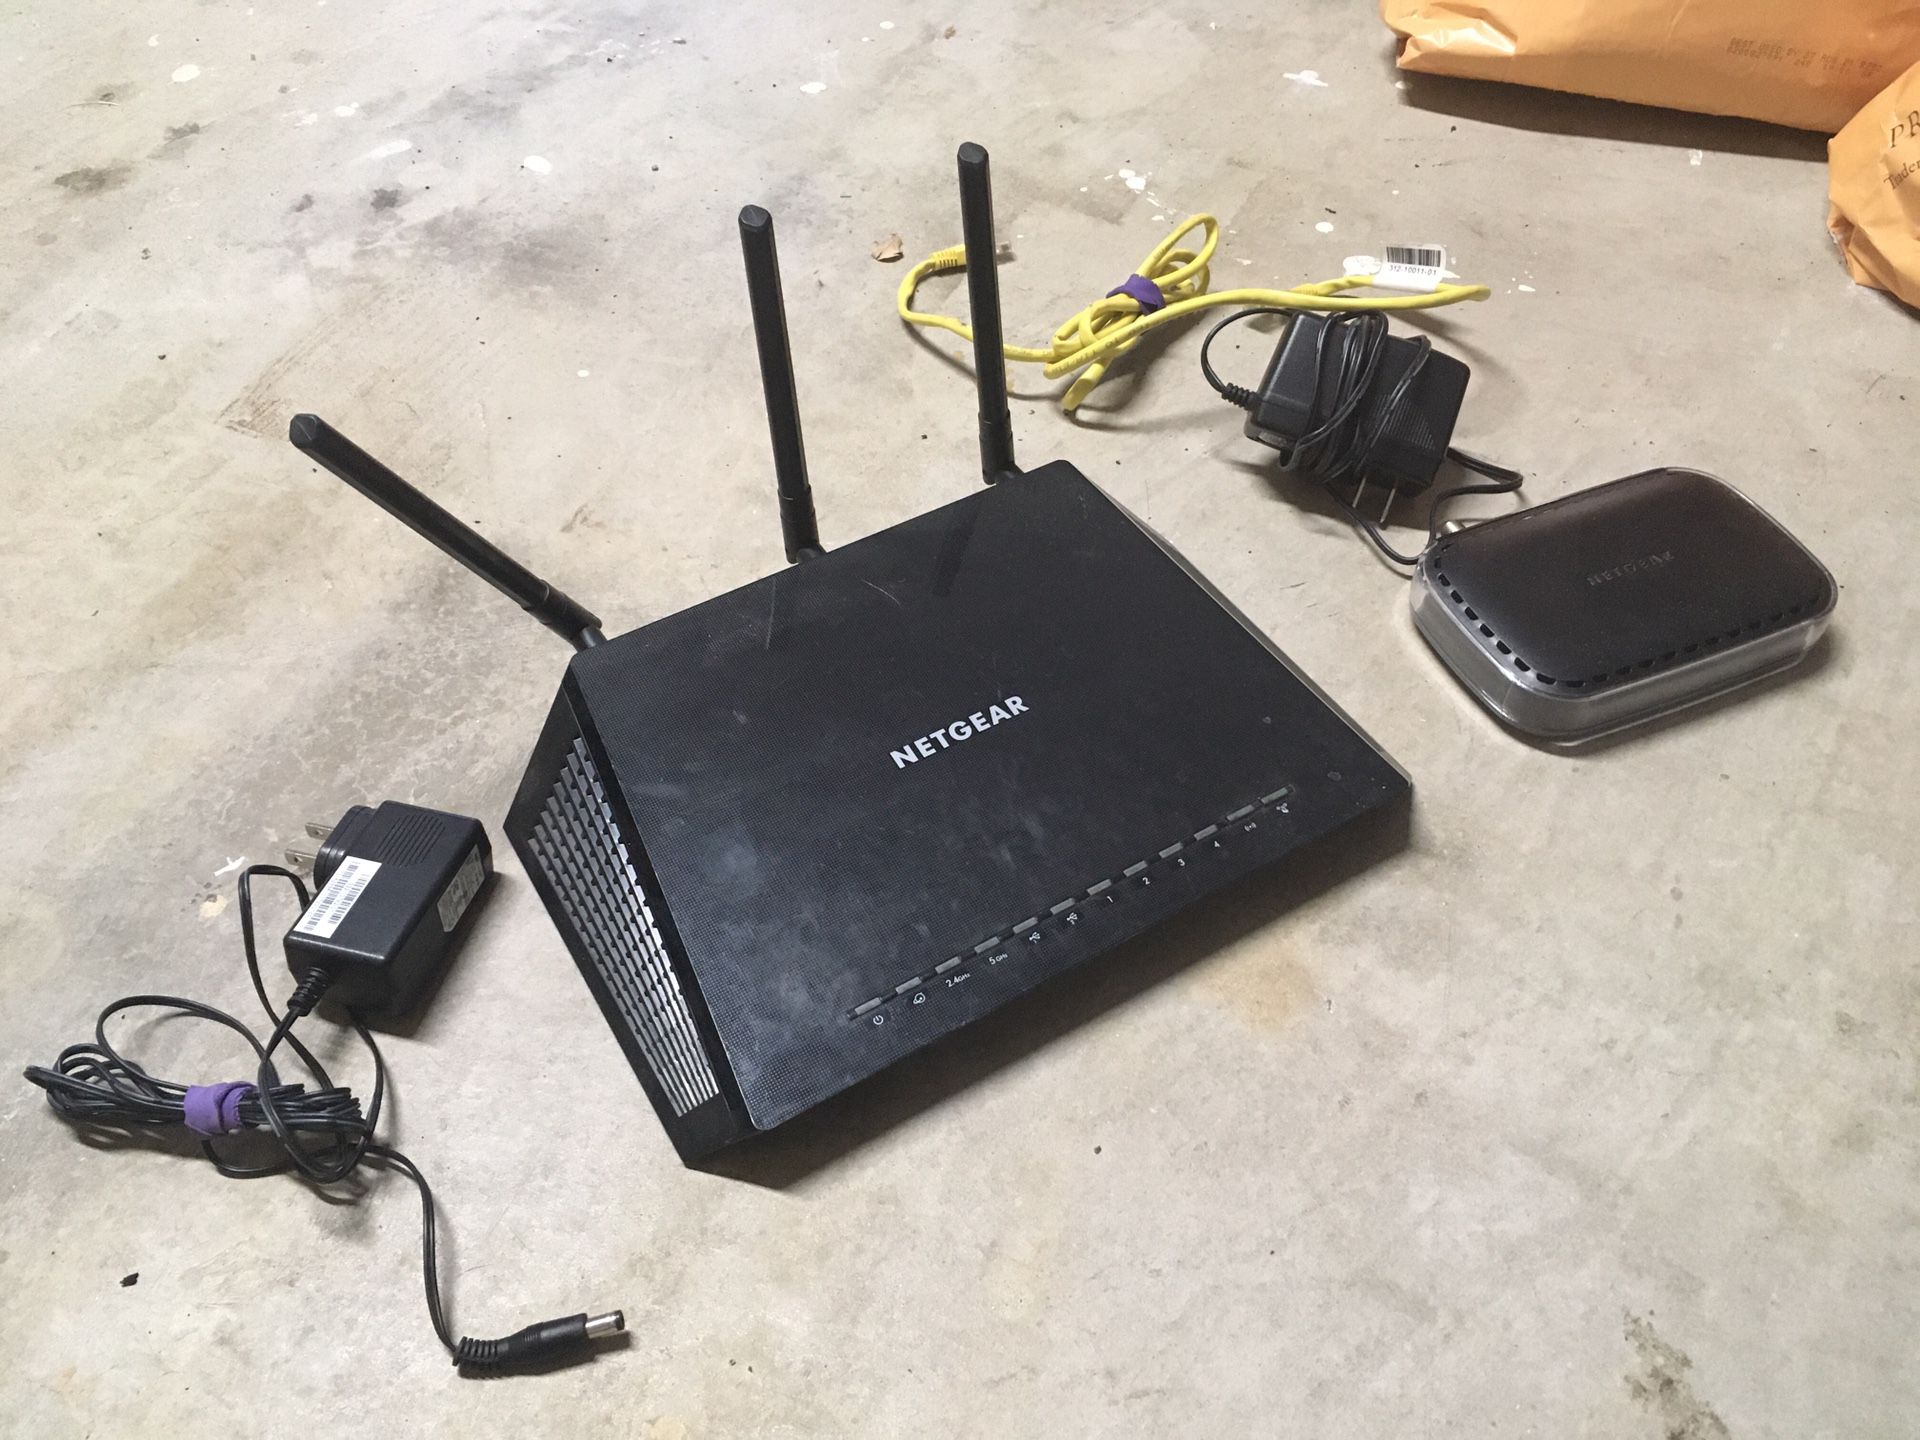 Netgear router and modem